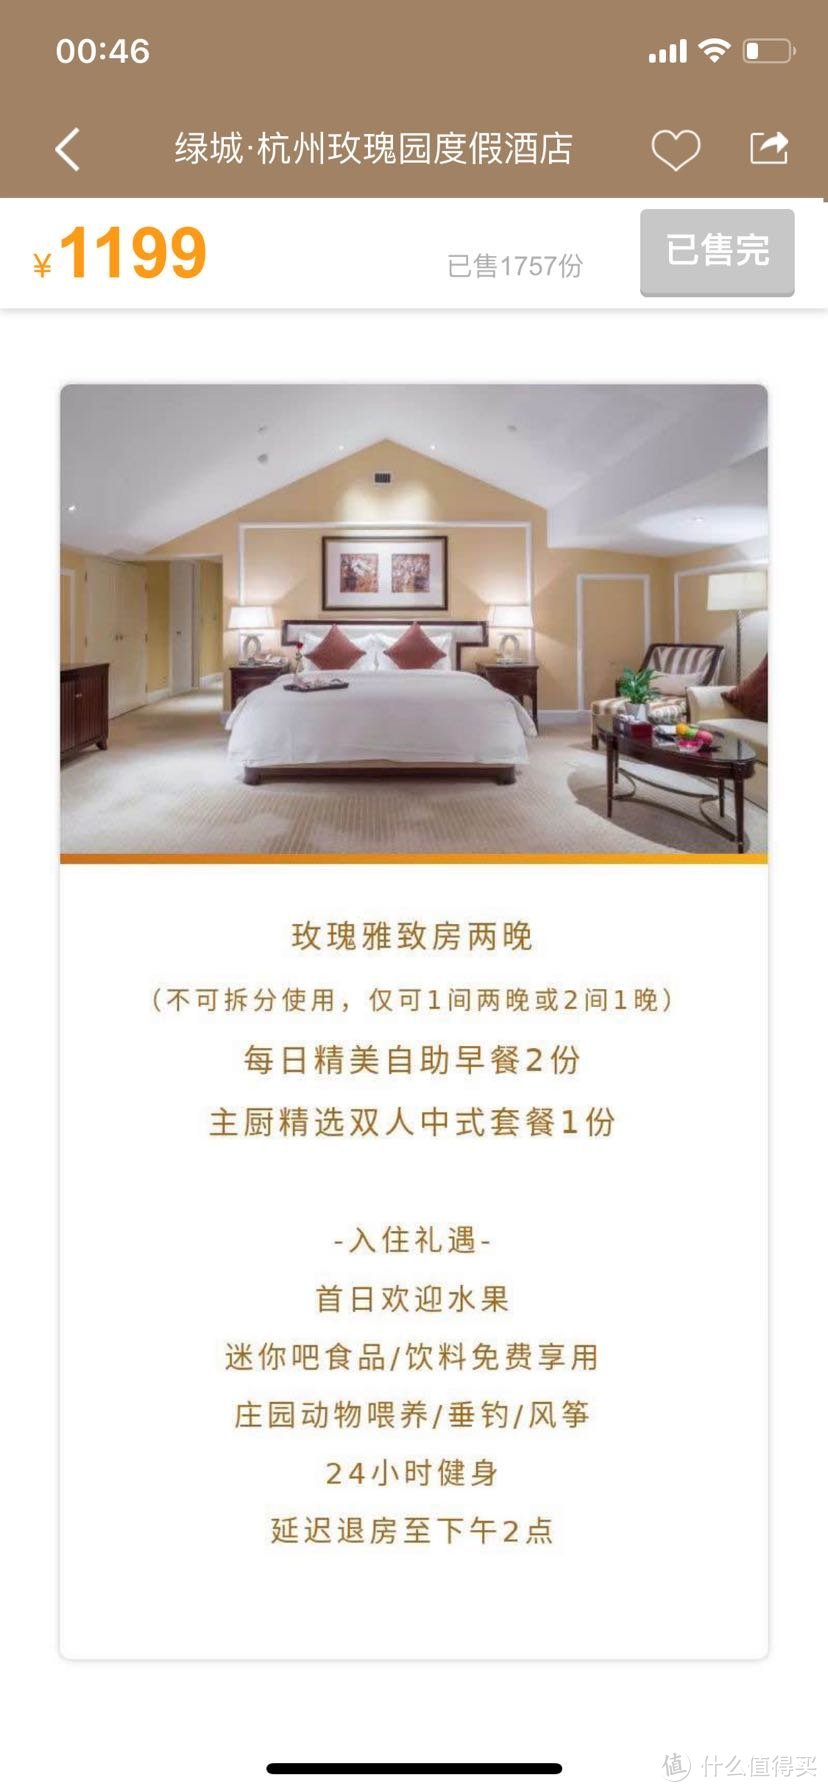 挂着“世界小型奢华酒店”名头的杭州绿城玫瑰园度假酒店体验如何